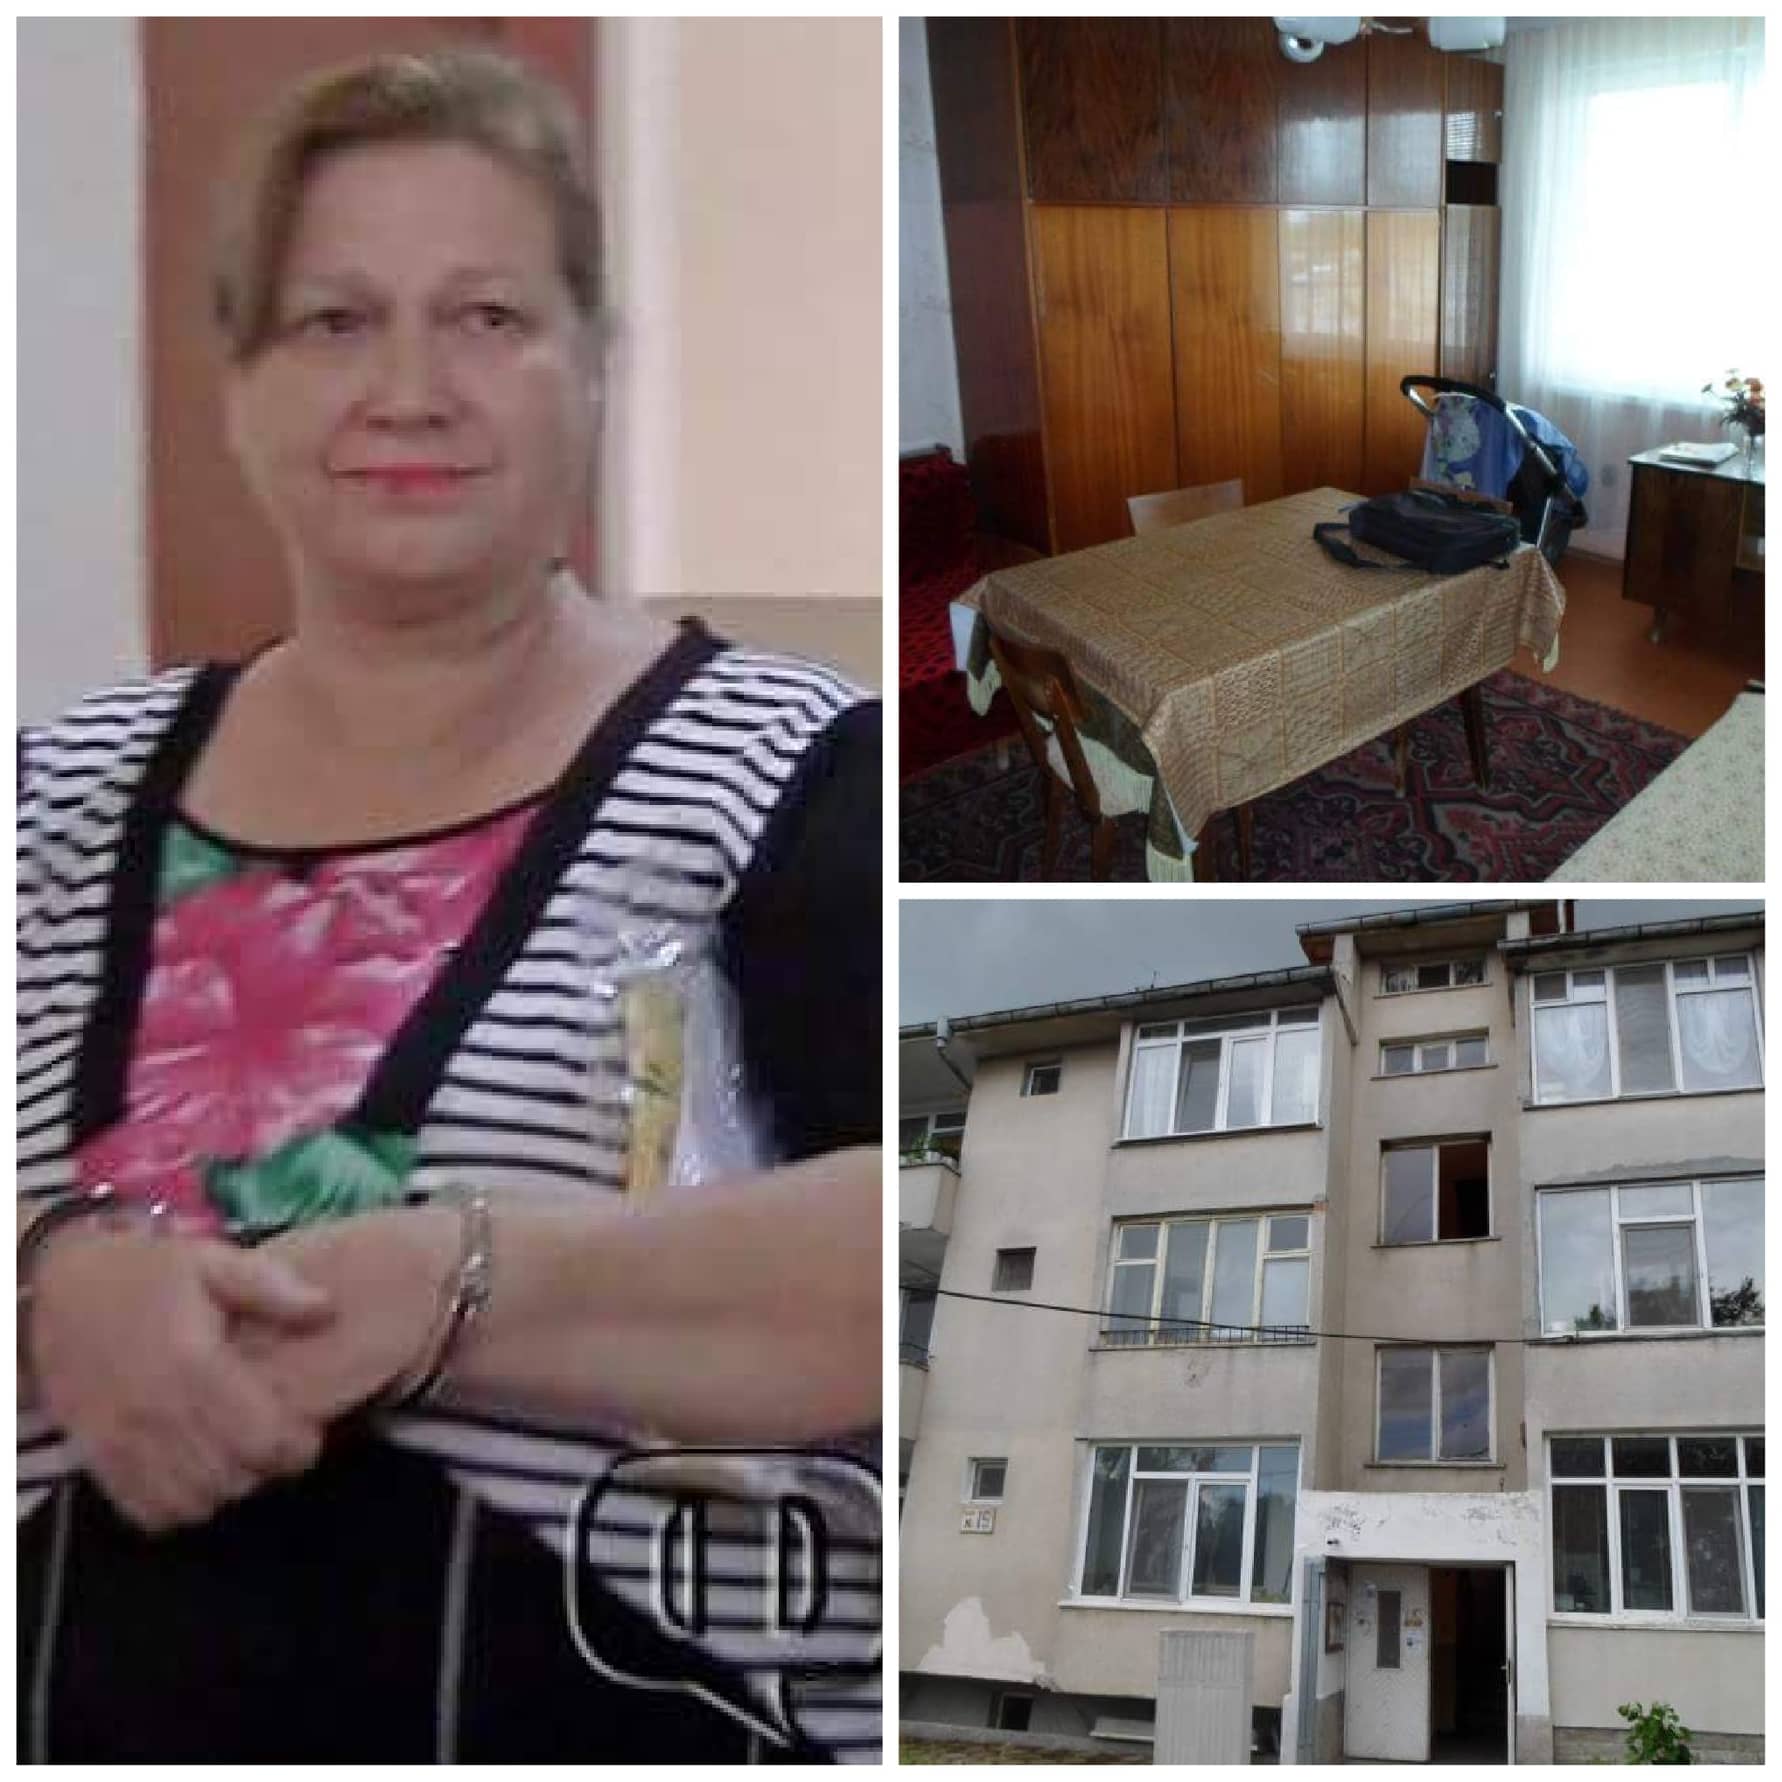 Ето го най-евтиния апартамент в Бургас, собственост е на жестока убийца, продават го заедно с майка й